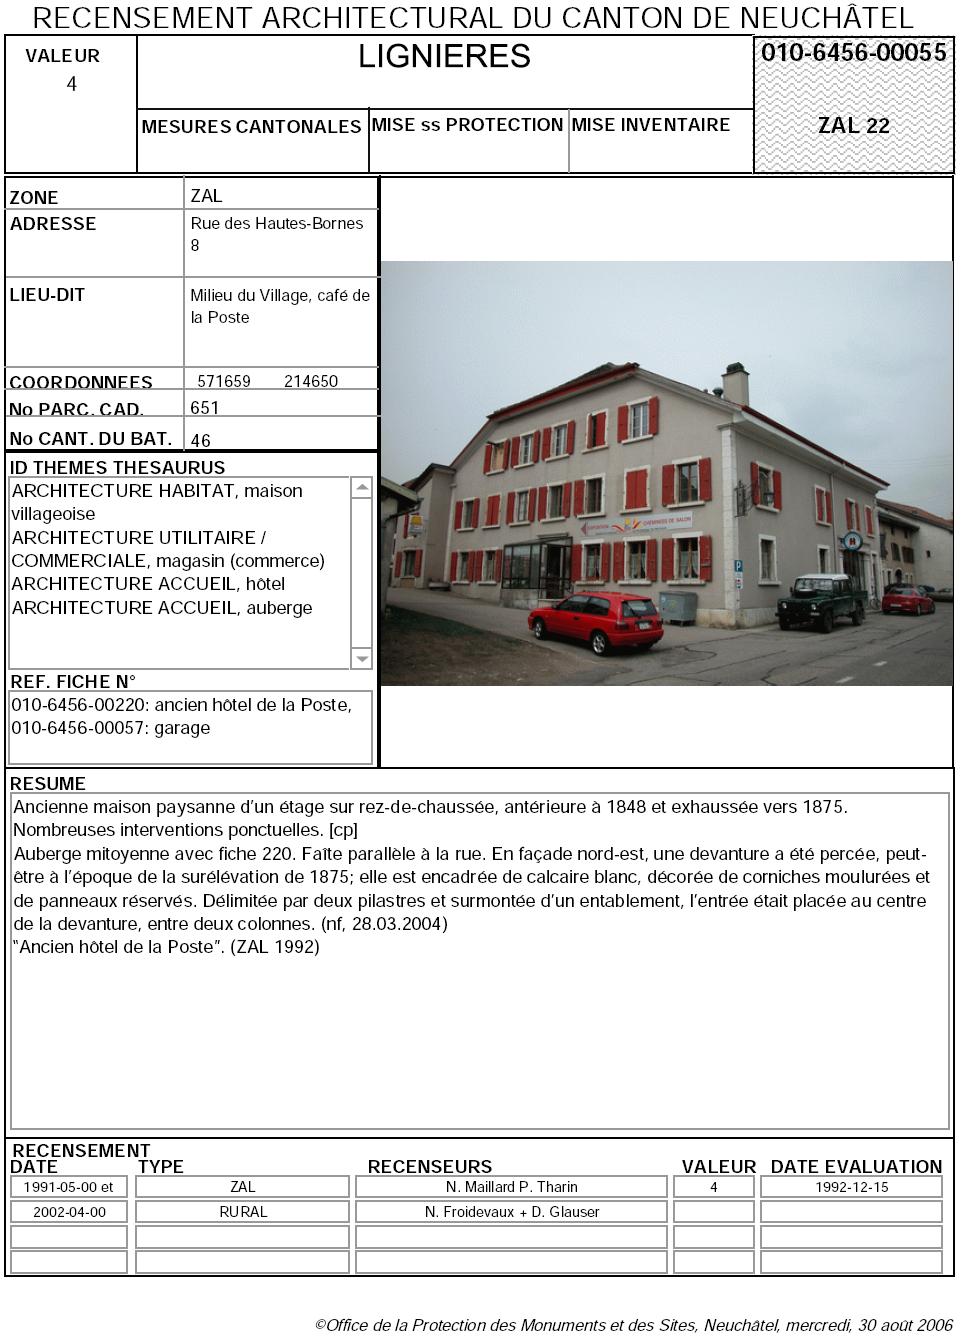 Recensement architectural du canton de Neuchâtel: Fiche 010-6456-00055